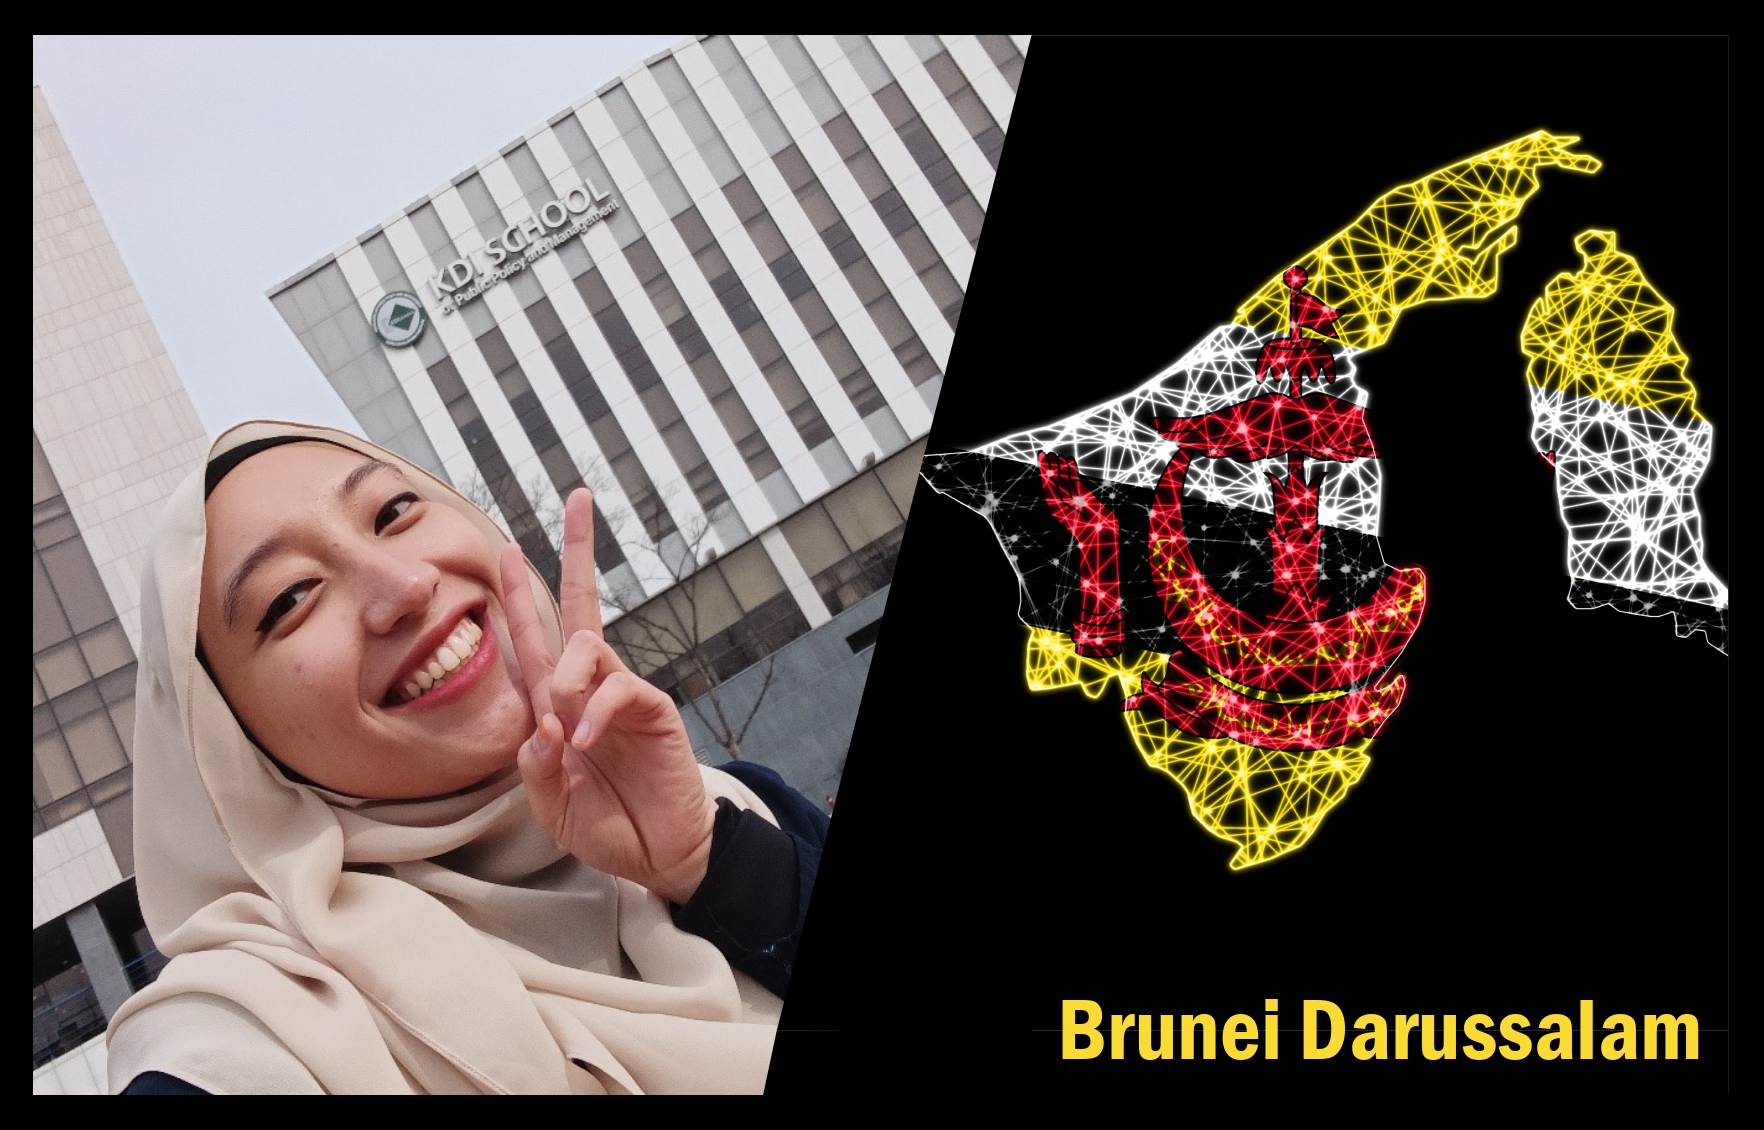 Interview: The First Student from Brunei Darussalam, Abidah (2022 MPP)